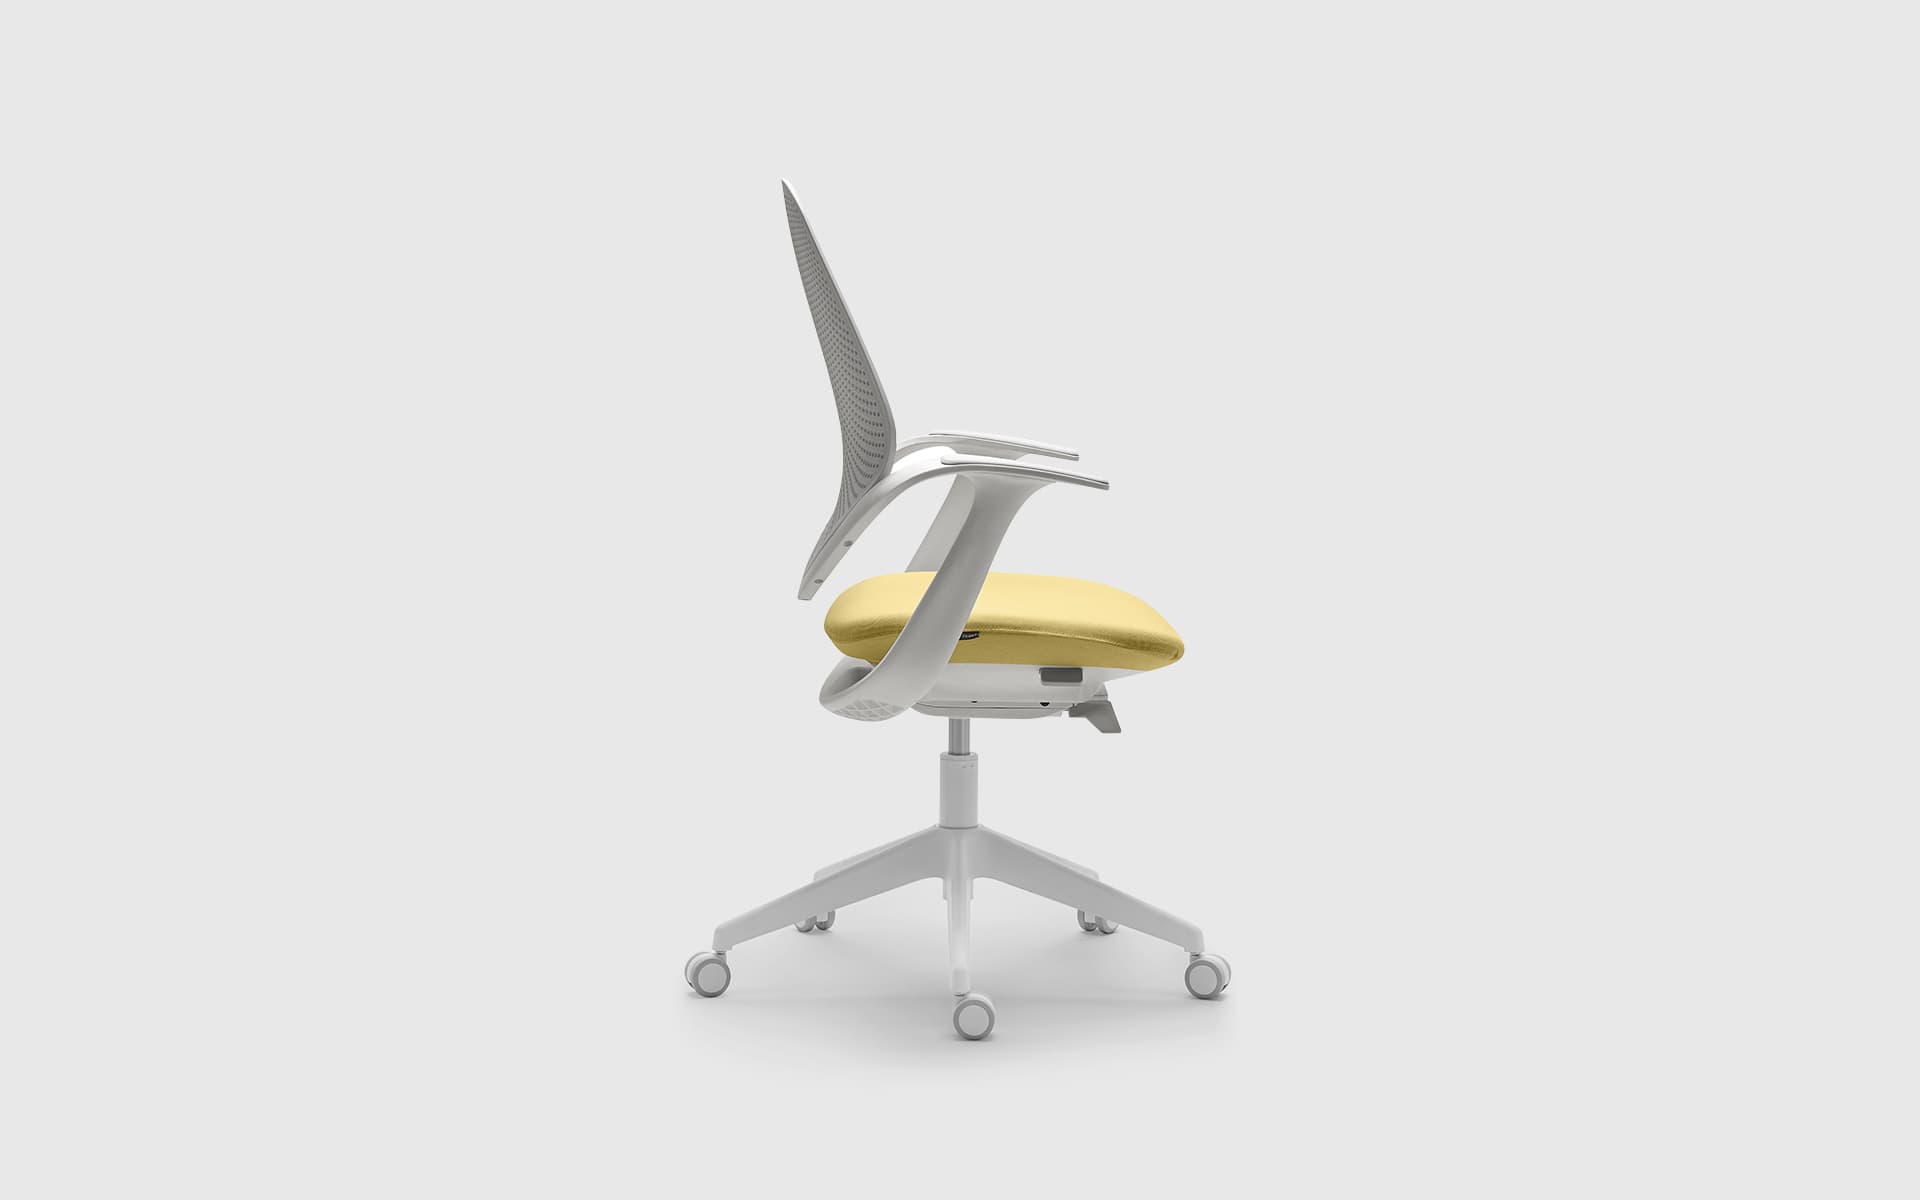 Seitenaufnahme eines Forma 5 Flow Bürostuhls von ITO Design mit gepolsterter Sitzfläche in Gelb, Rücken- und Armlehnen in Weiss.